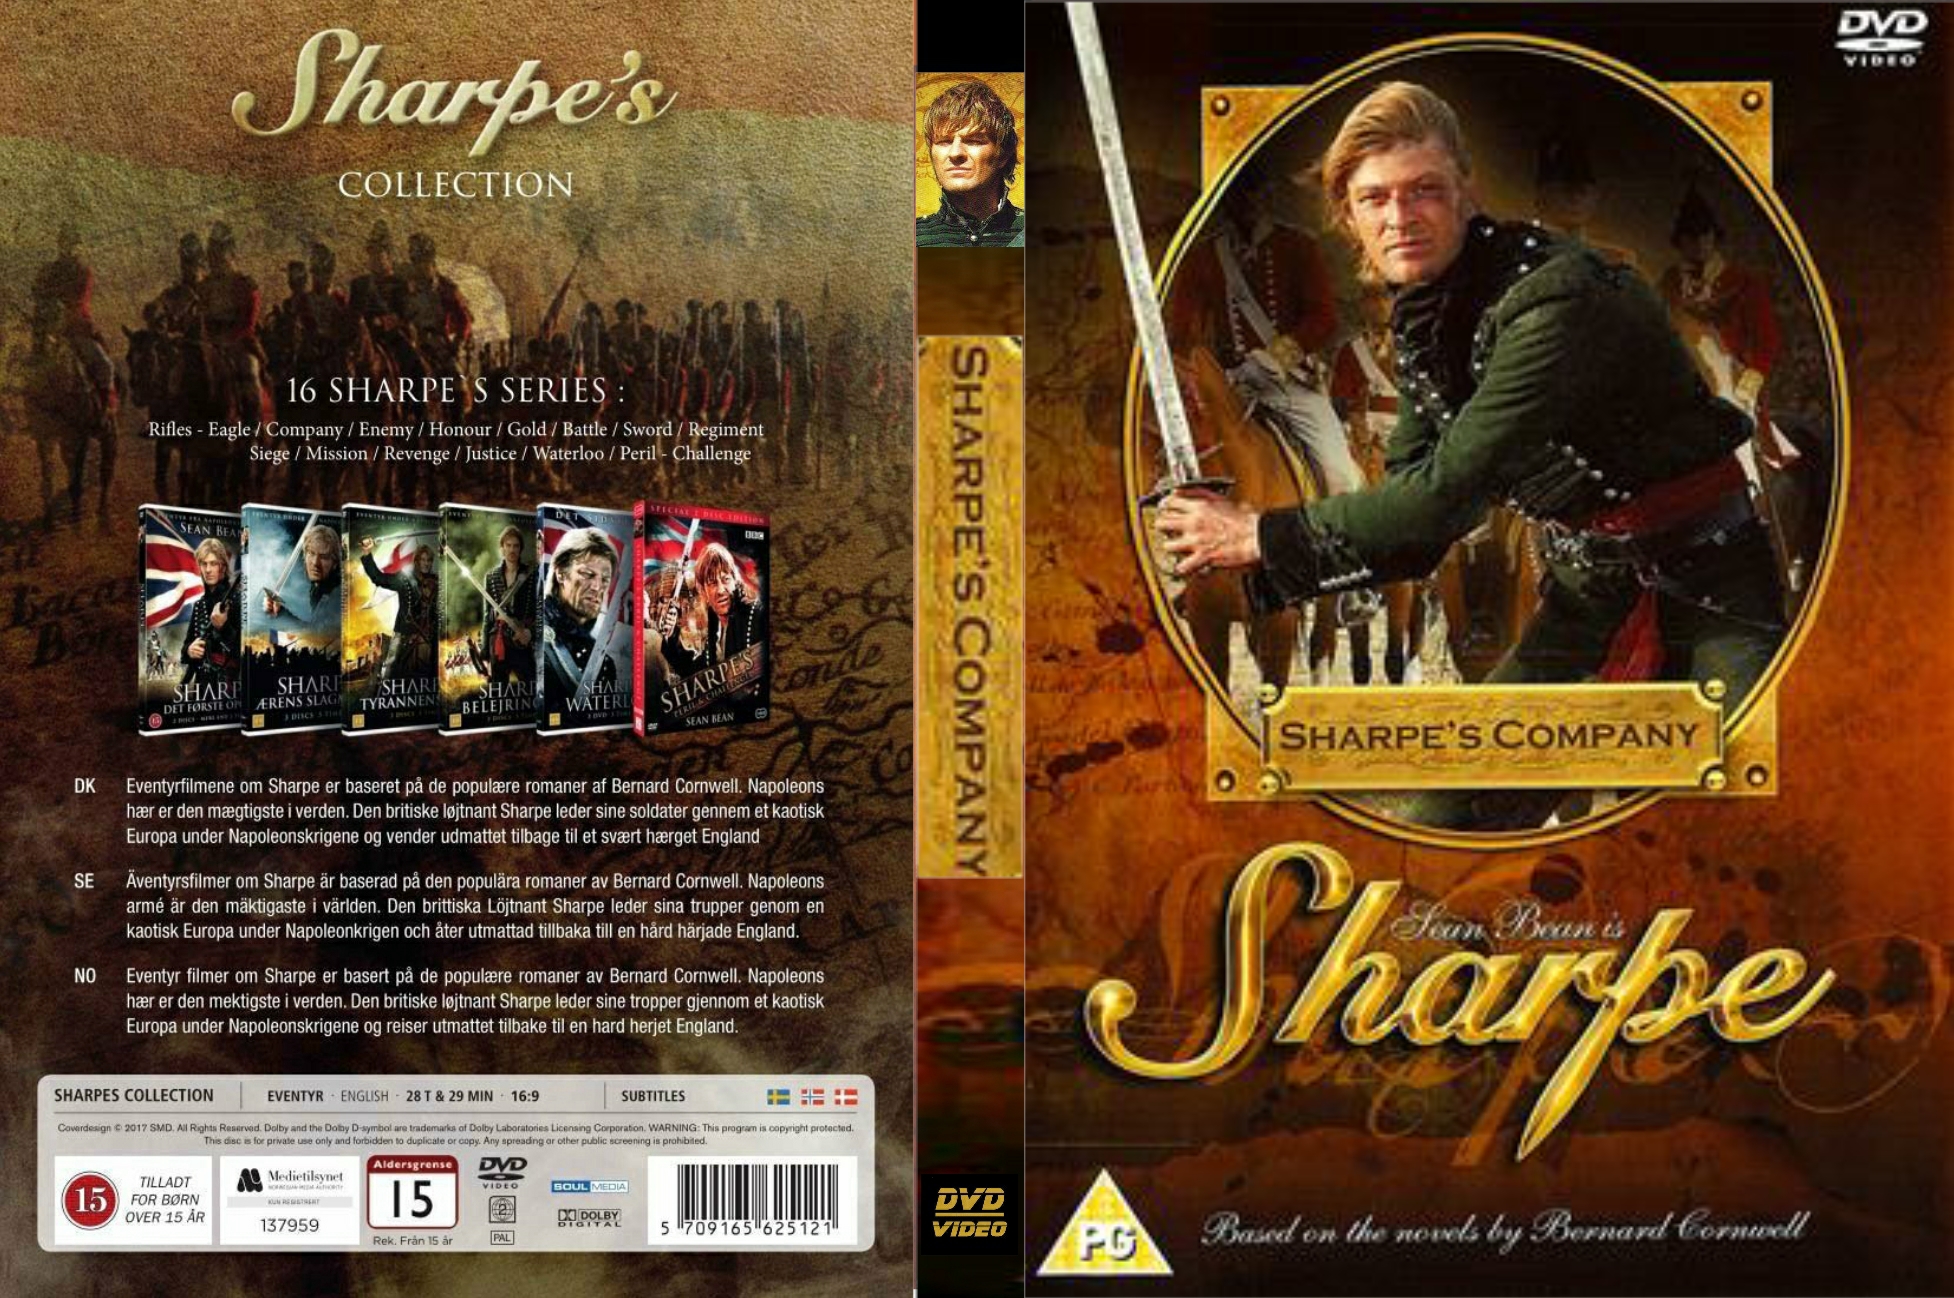 Sharpes Company 1994 - DvD 3